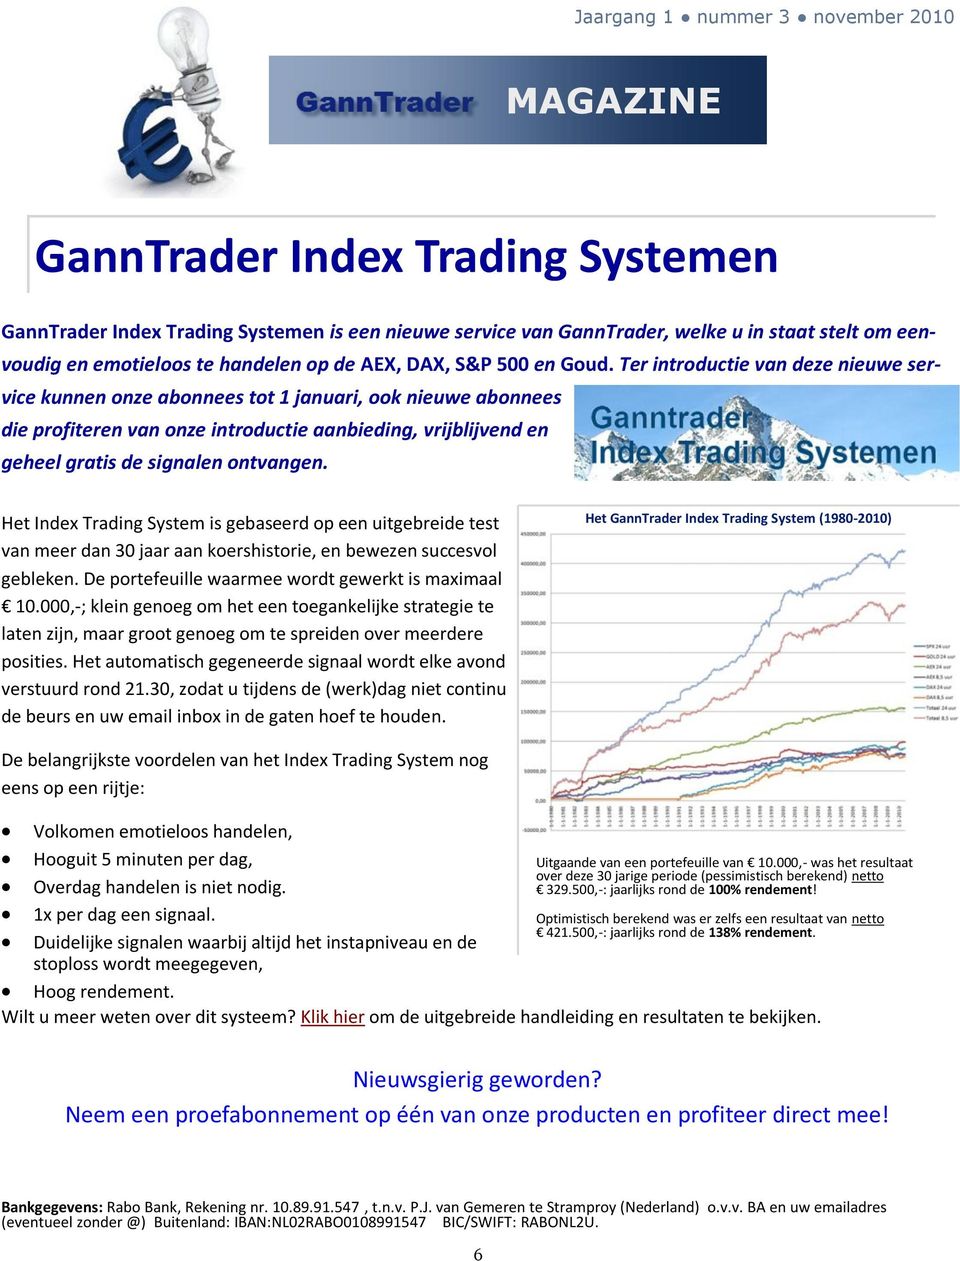 Het Index Trading System is gebaseerd op een uitgebreide test van meer dan 30 jaar aan koershistorie, en bewezen succesvol gebleken. De portefeuille waarmee wordt gewerkt is maximaal 10.